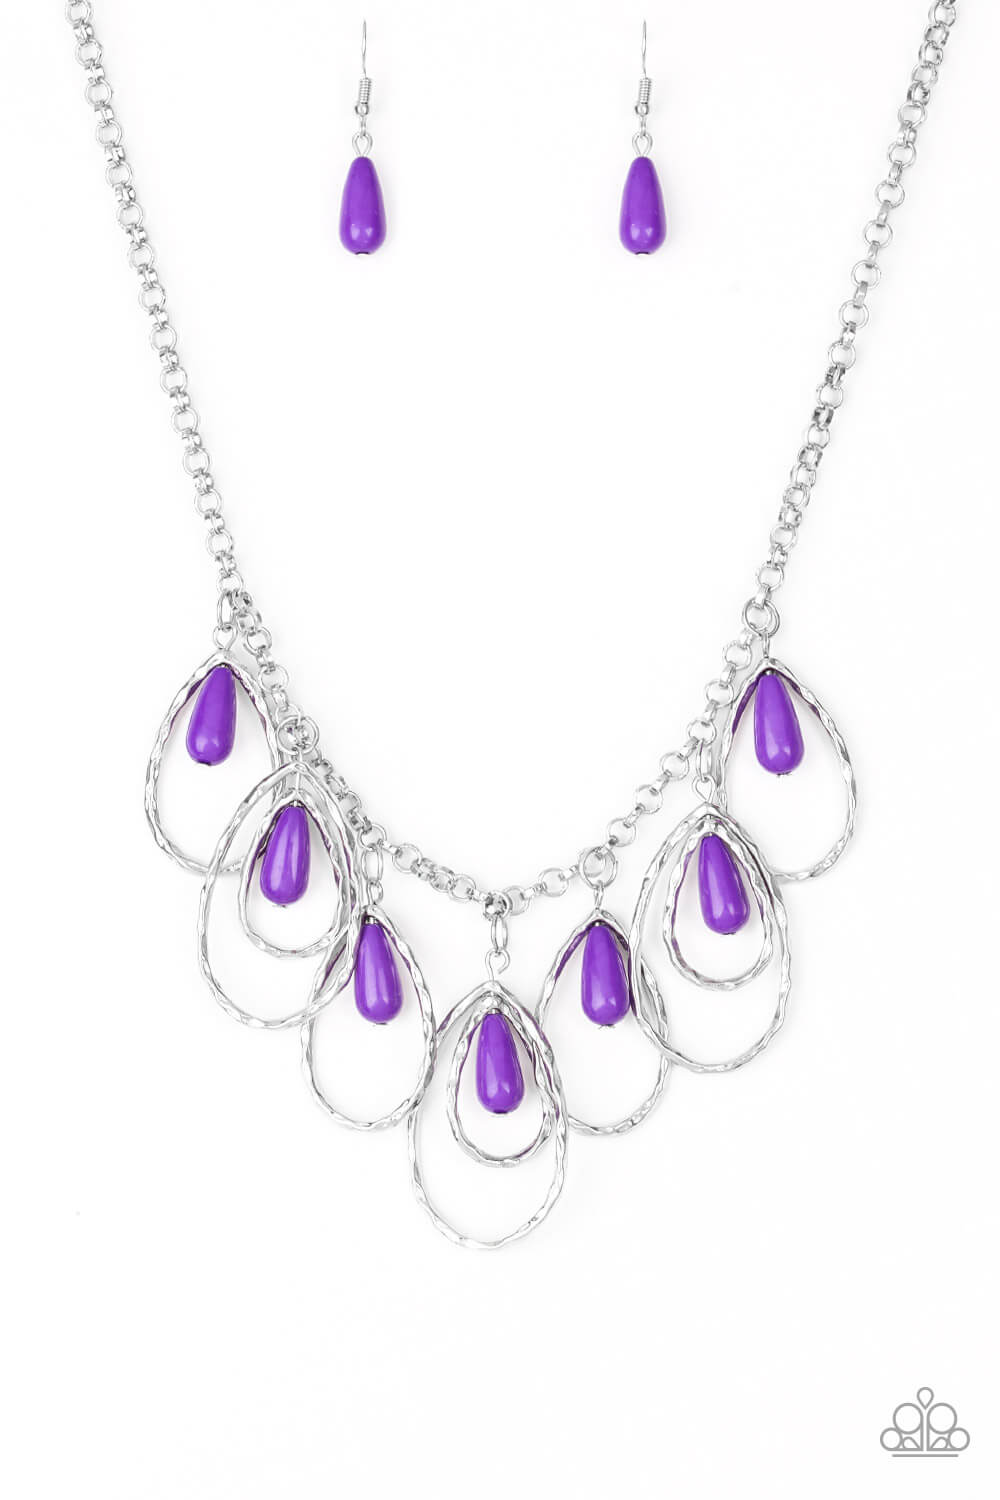 Tango Tempest - Purple Necklace Set - Princess Glam Shop